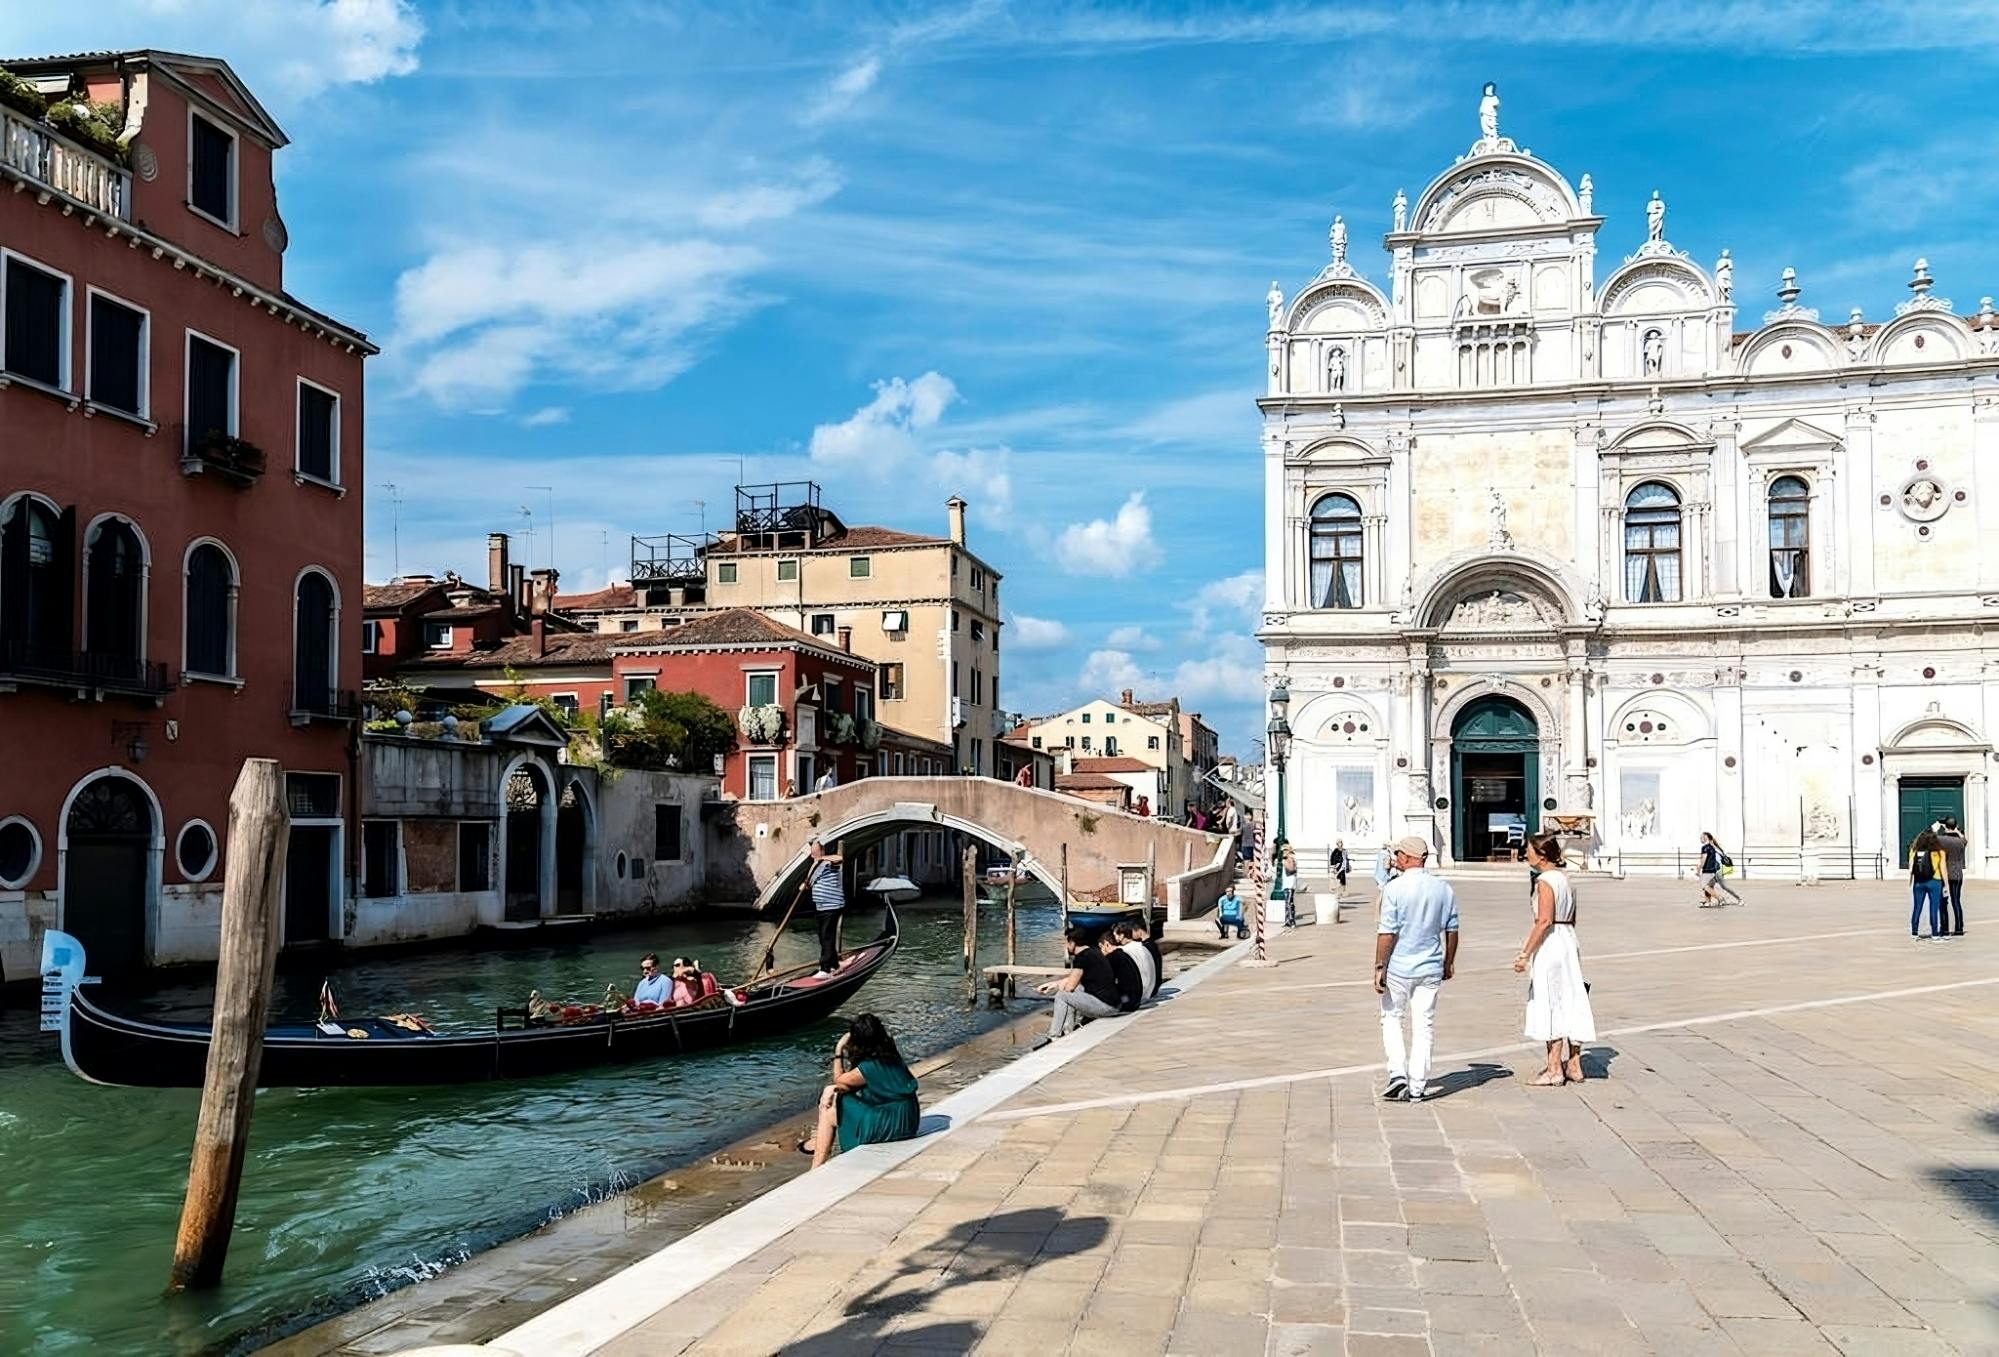 Prywatny rejs gondolą w Wenecji z dala od utartych szlaków